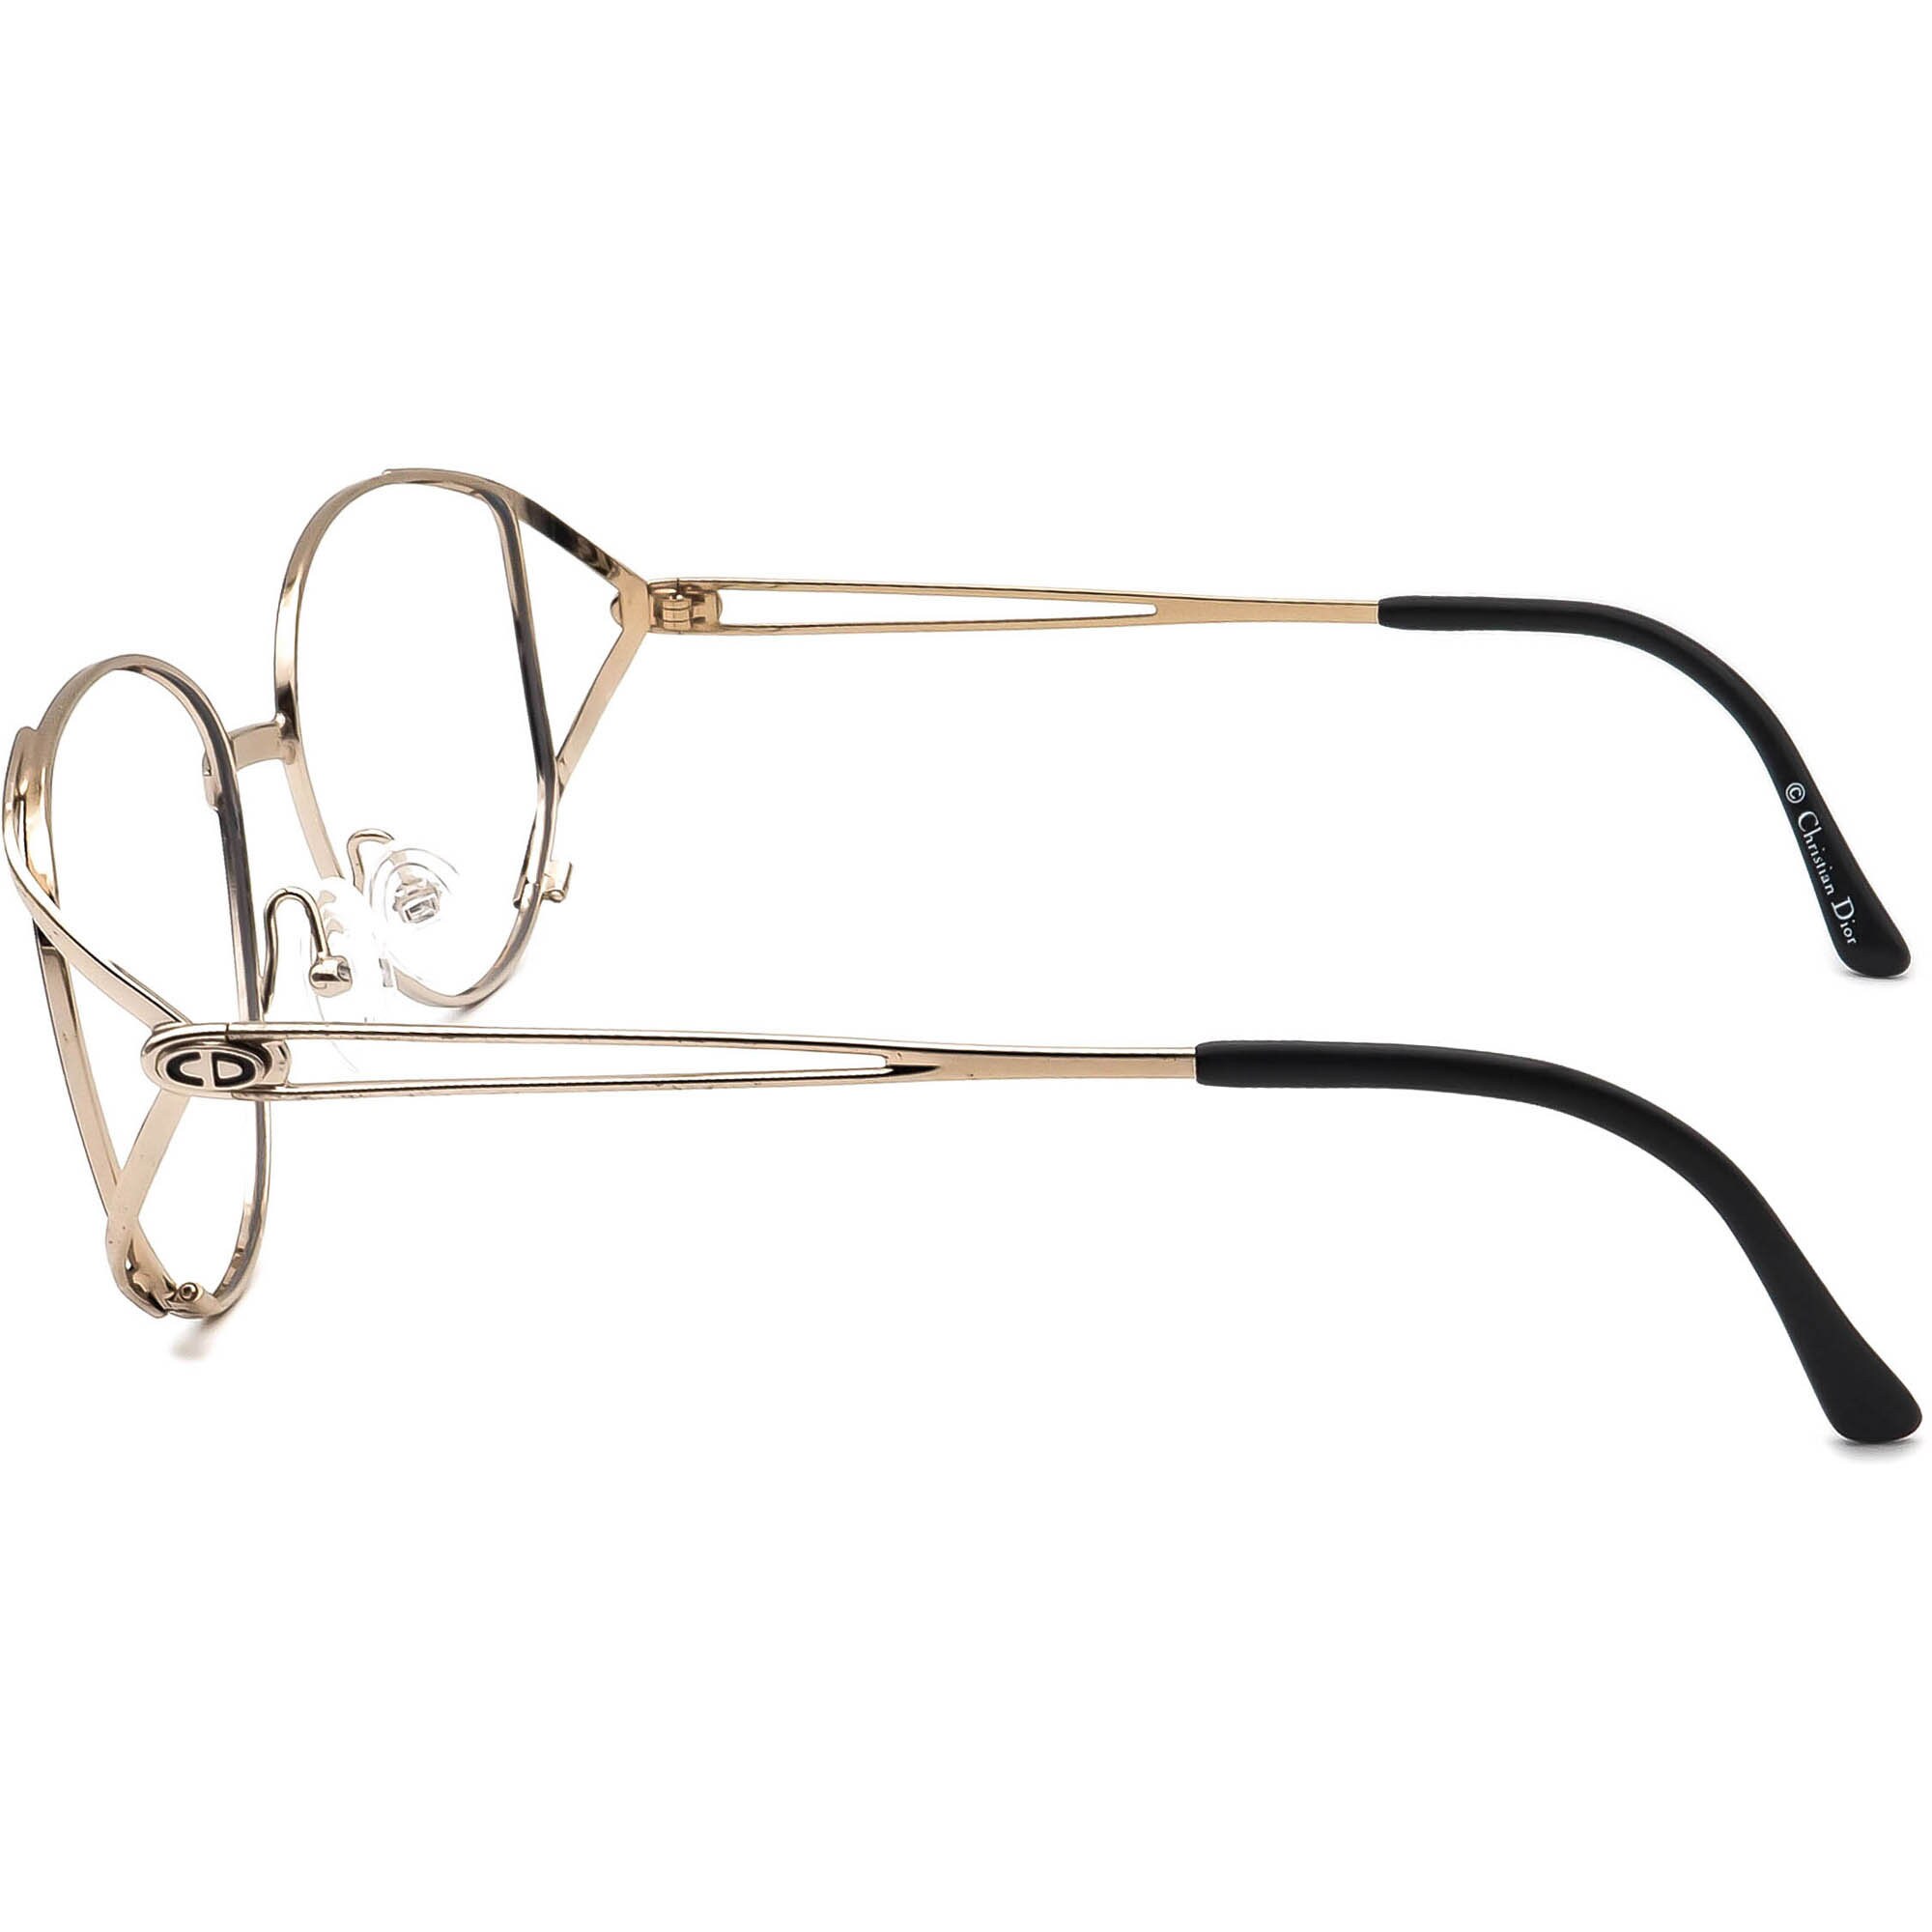 Christian Dior Eyeglasses 2646 49 Gold/black Metal Frame - Etsy